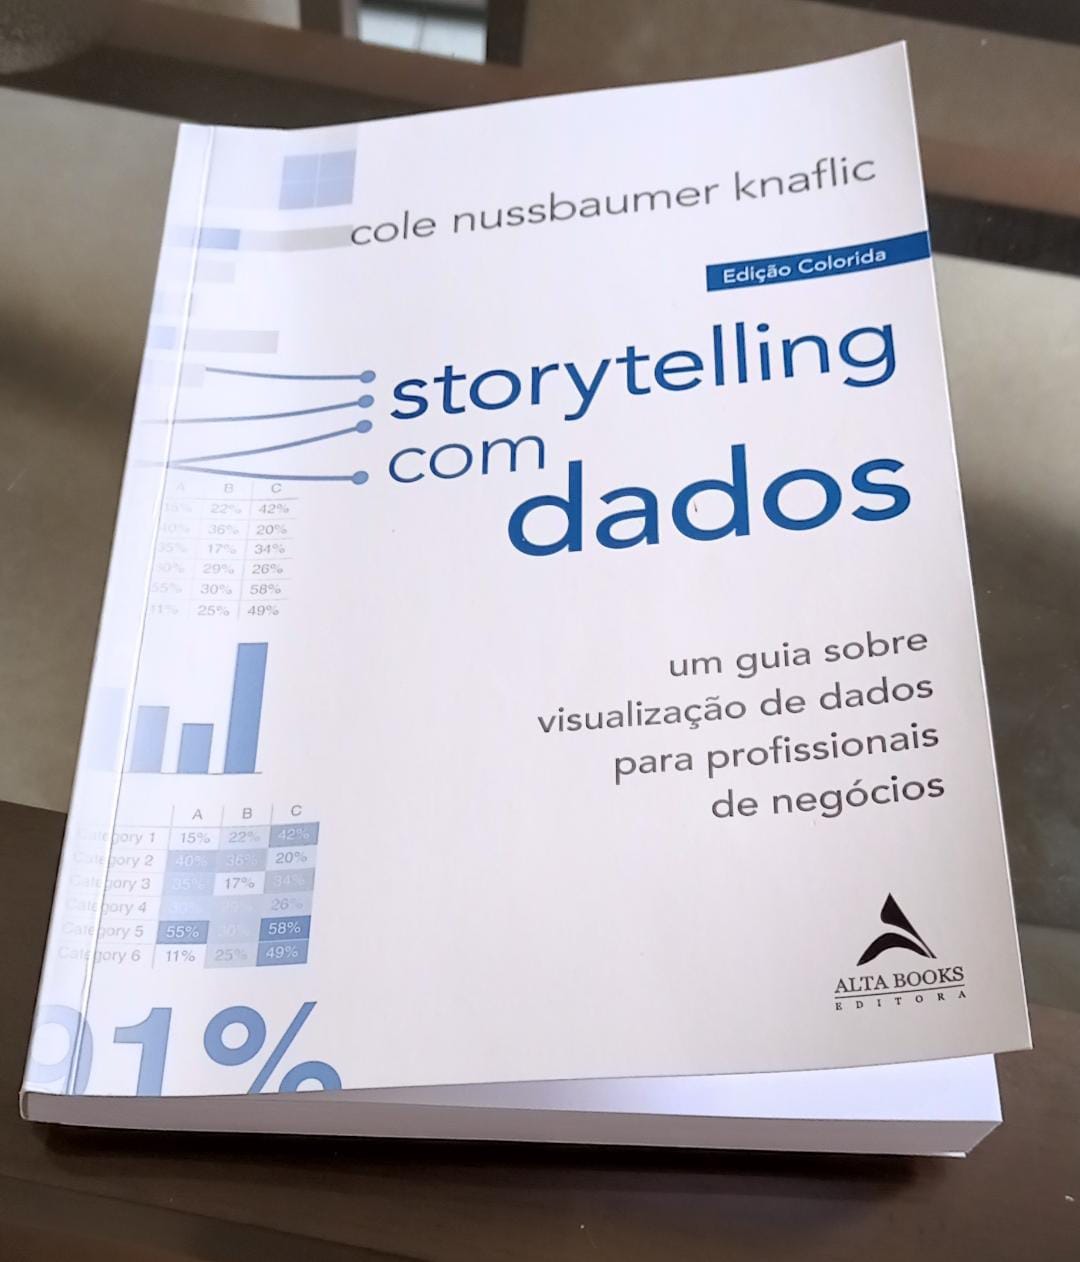 Resumo do livro “Storytelling com Dados”, de Cole Nussbaumer Knaflic | by  Anderson Soares | Medium